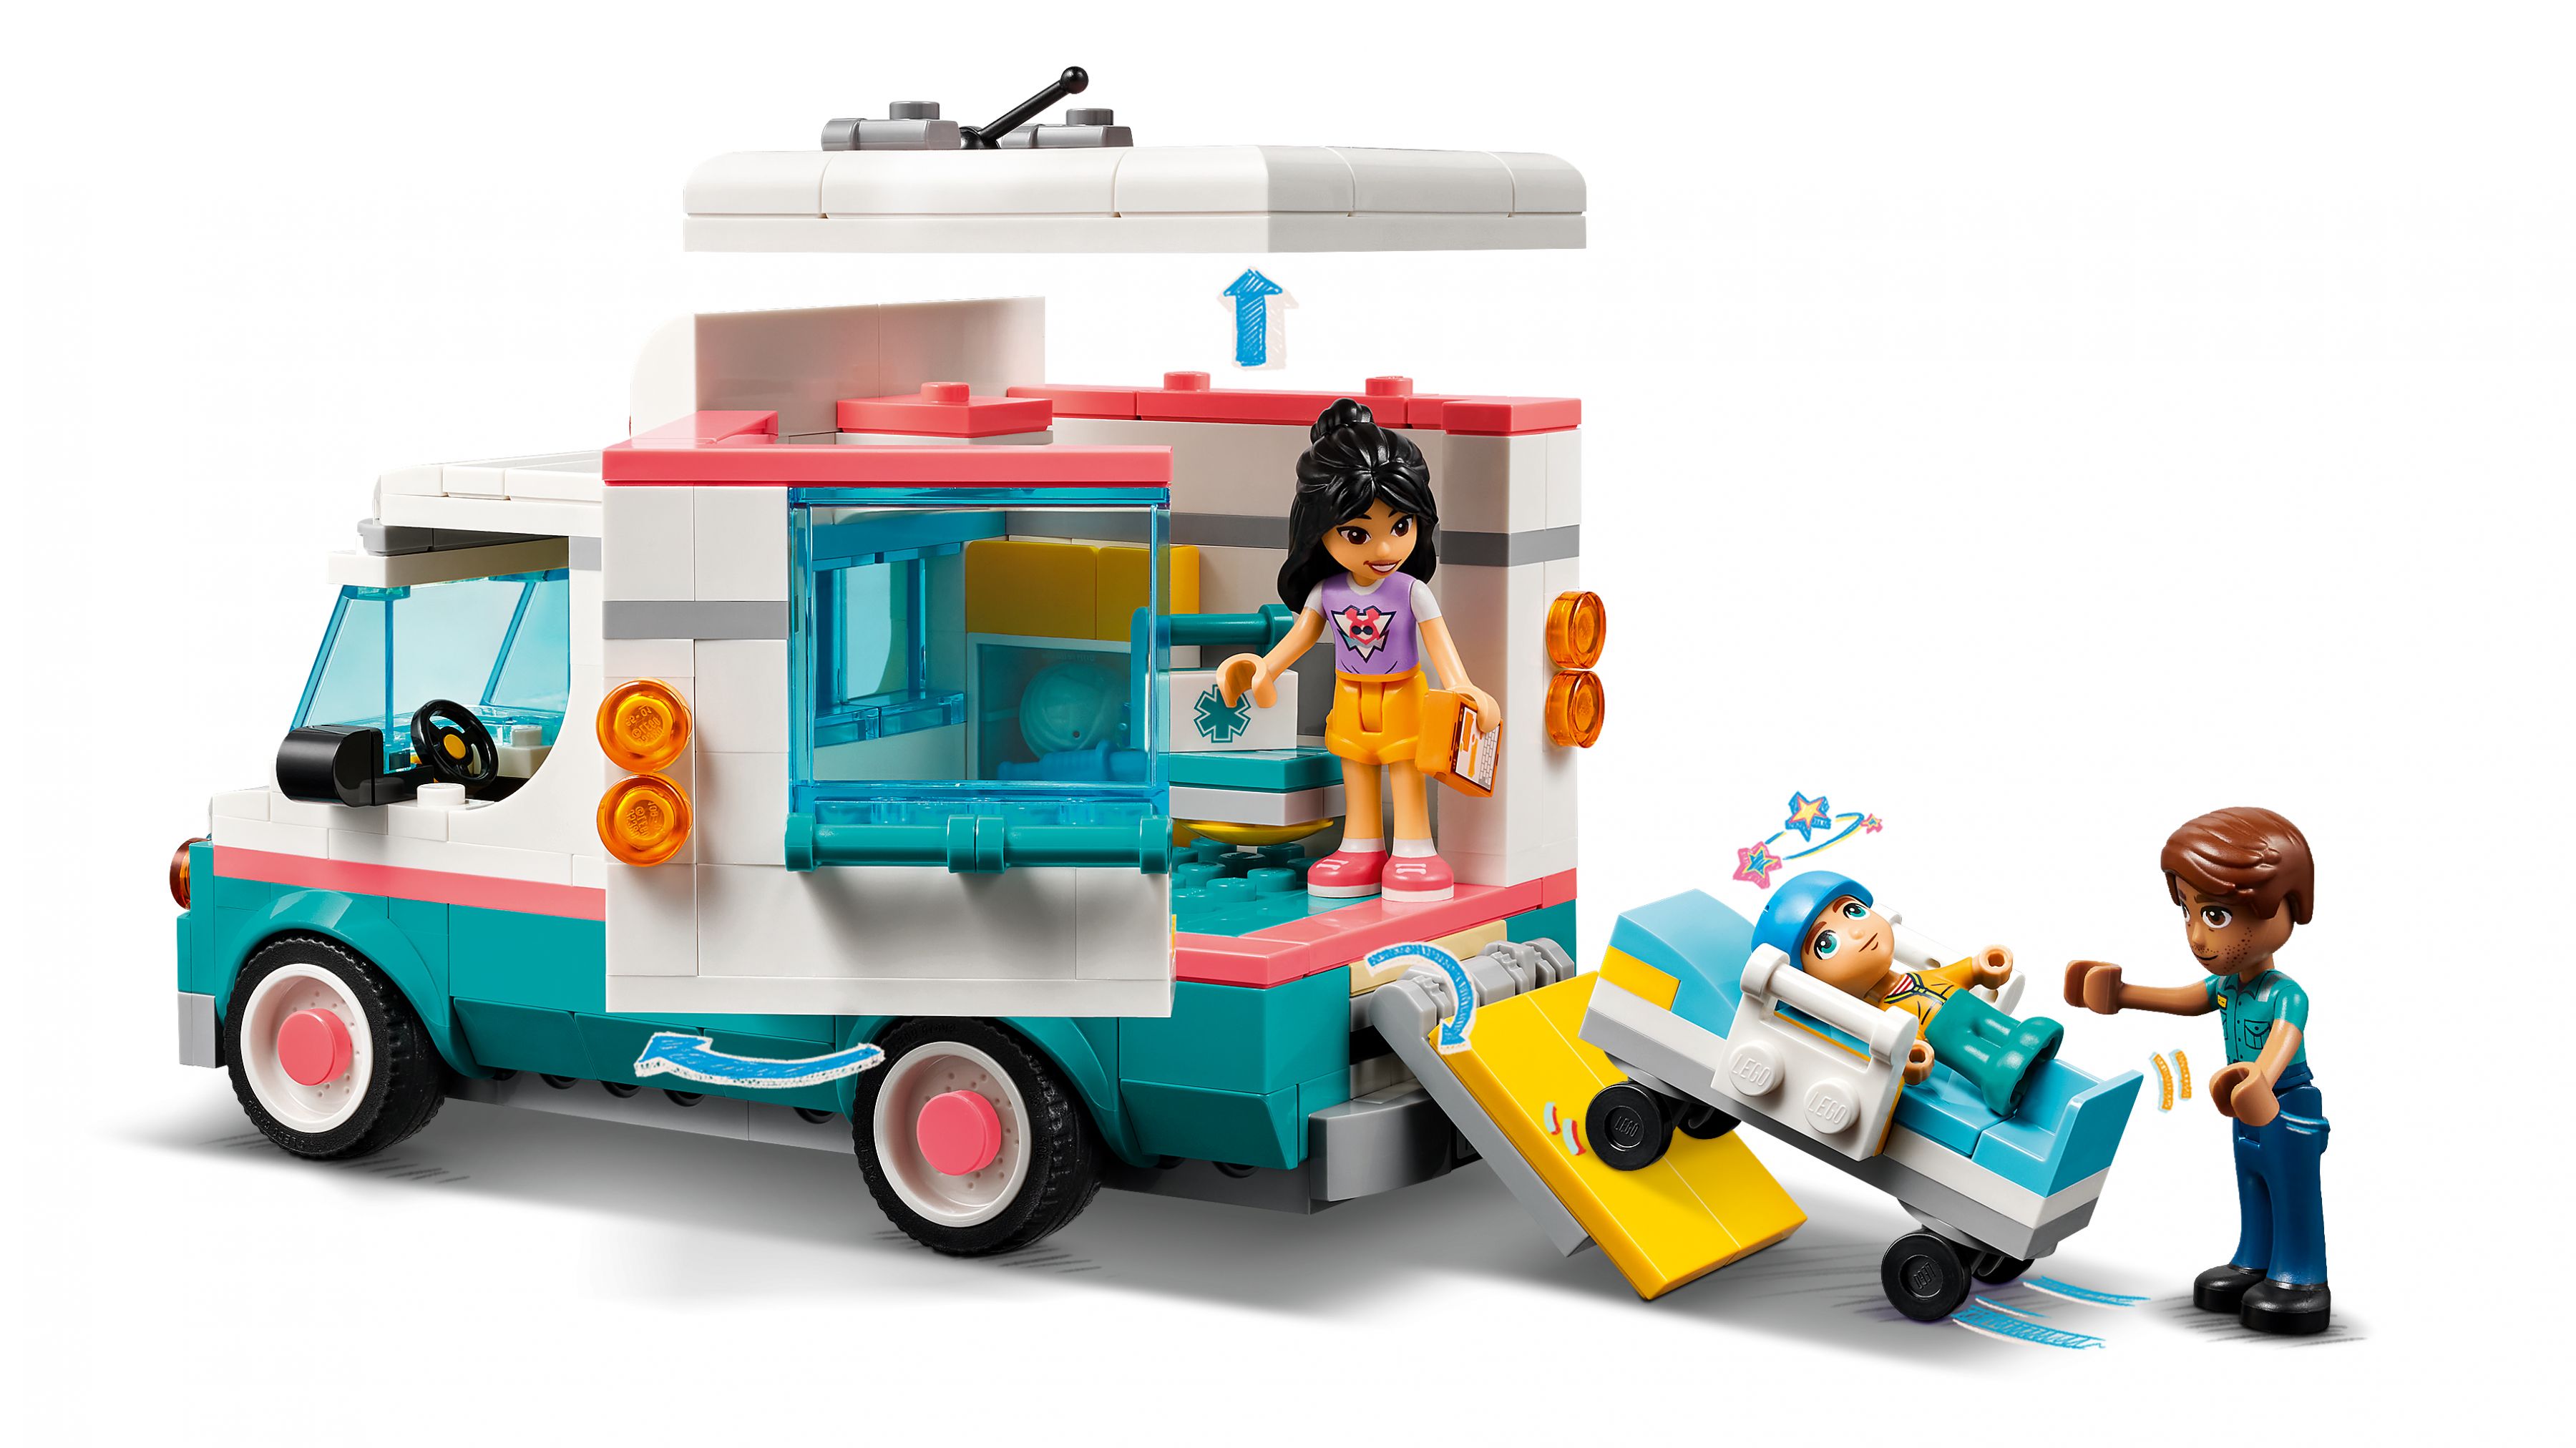 LEGO Friends 42613 Heartlake City Rettungswagen LEGO_42613_WEB_SEC03_NOBG.jpg